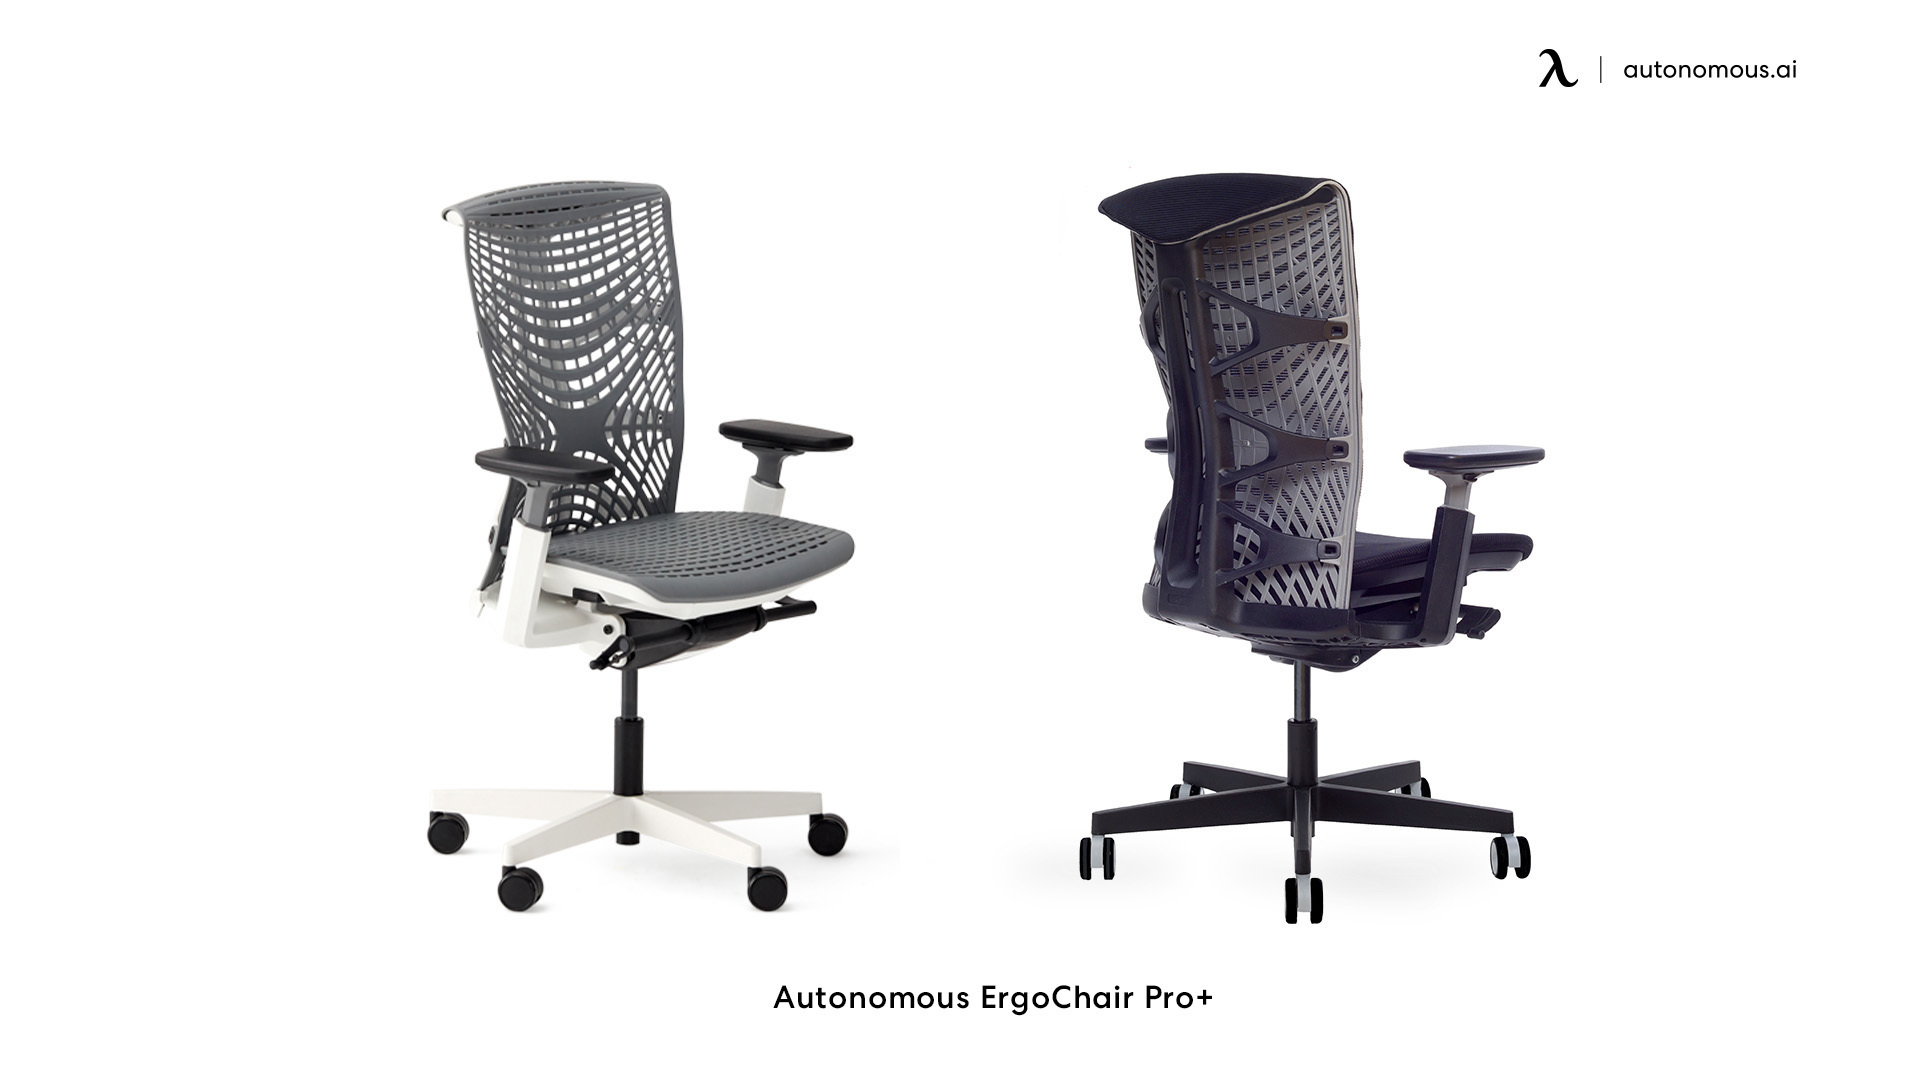 Autonomous ErgoChair Plus comfortable desk chair